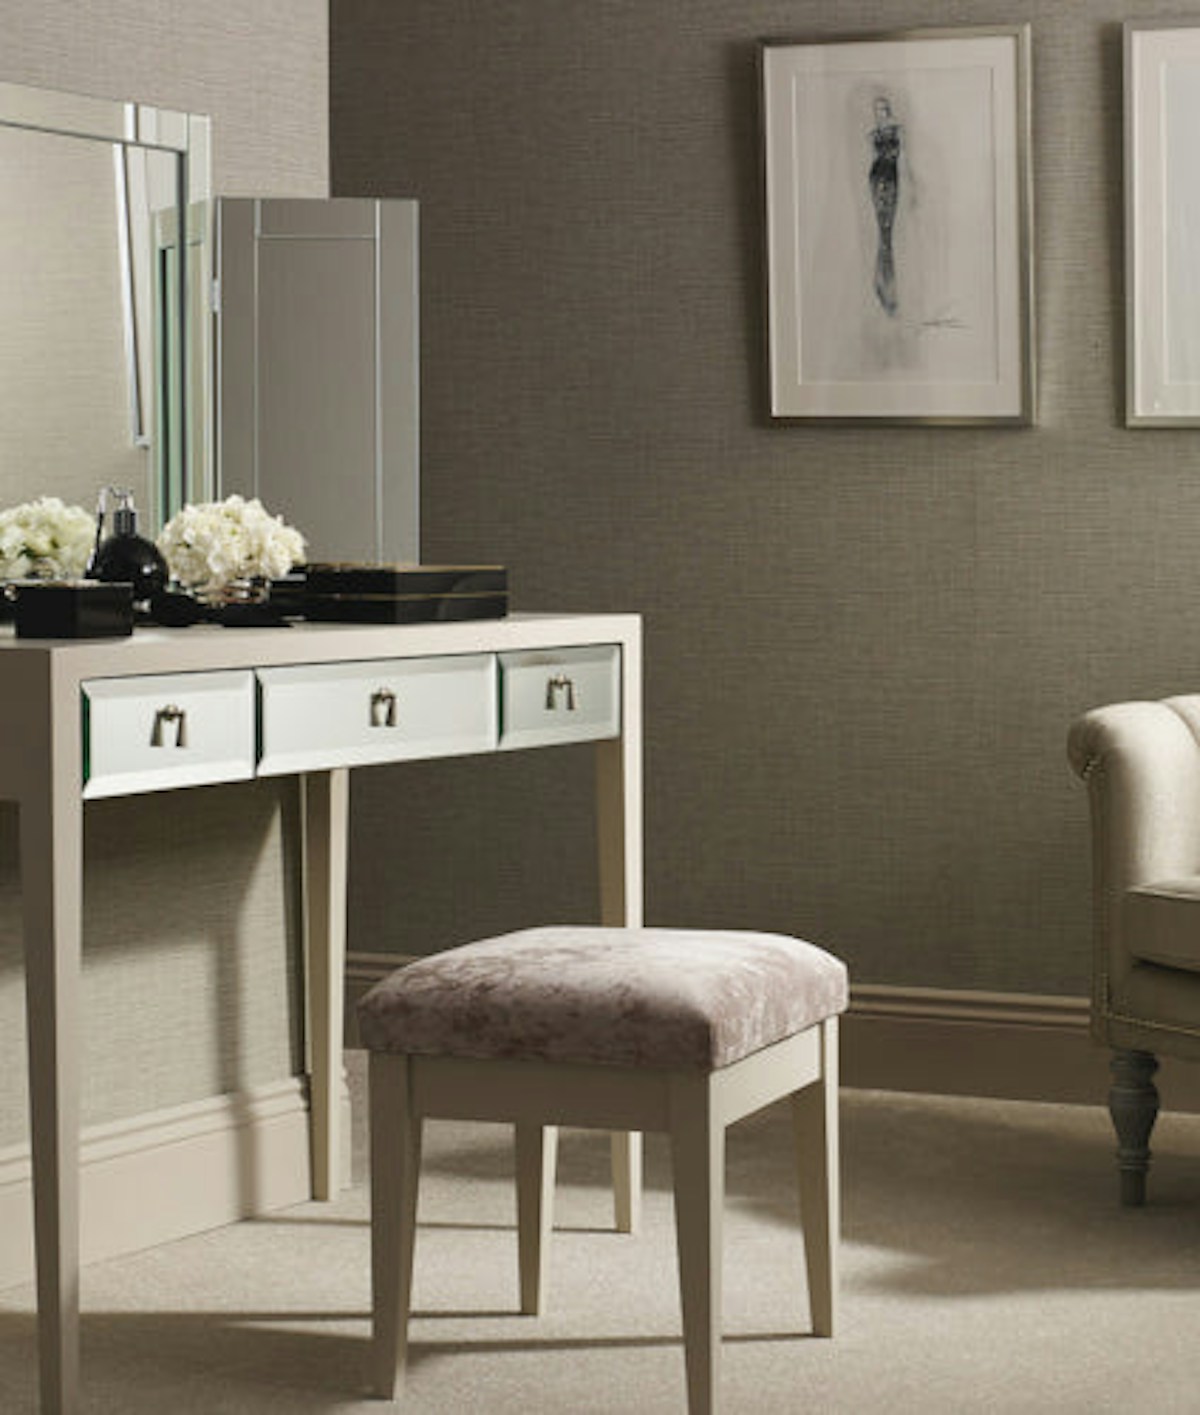 Summer Interior Design Trends - Feminine Dressing Room - LuxDeco.com Style Guide